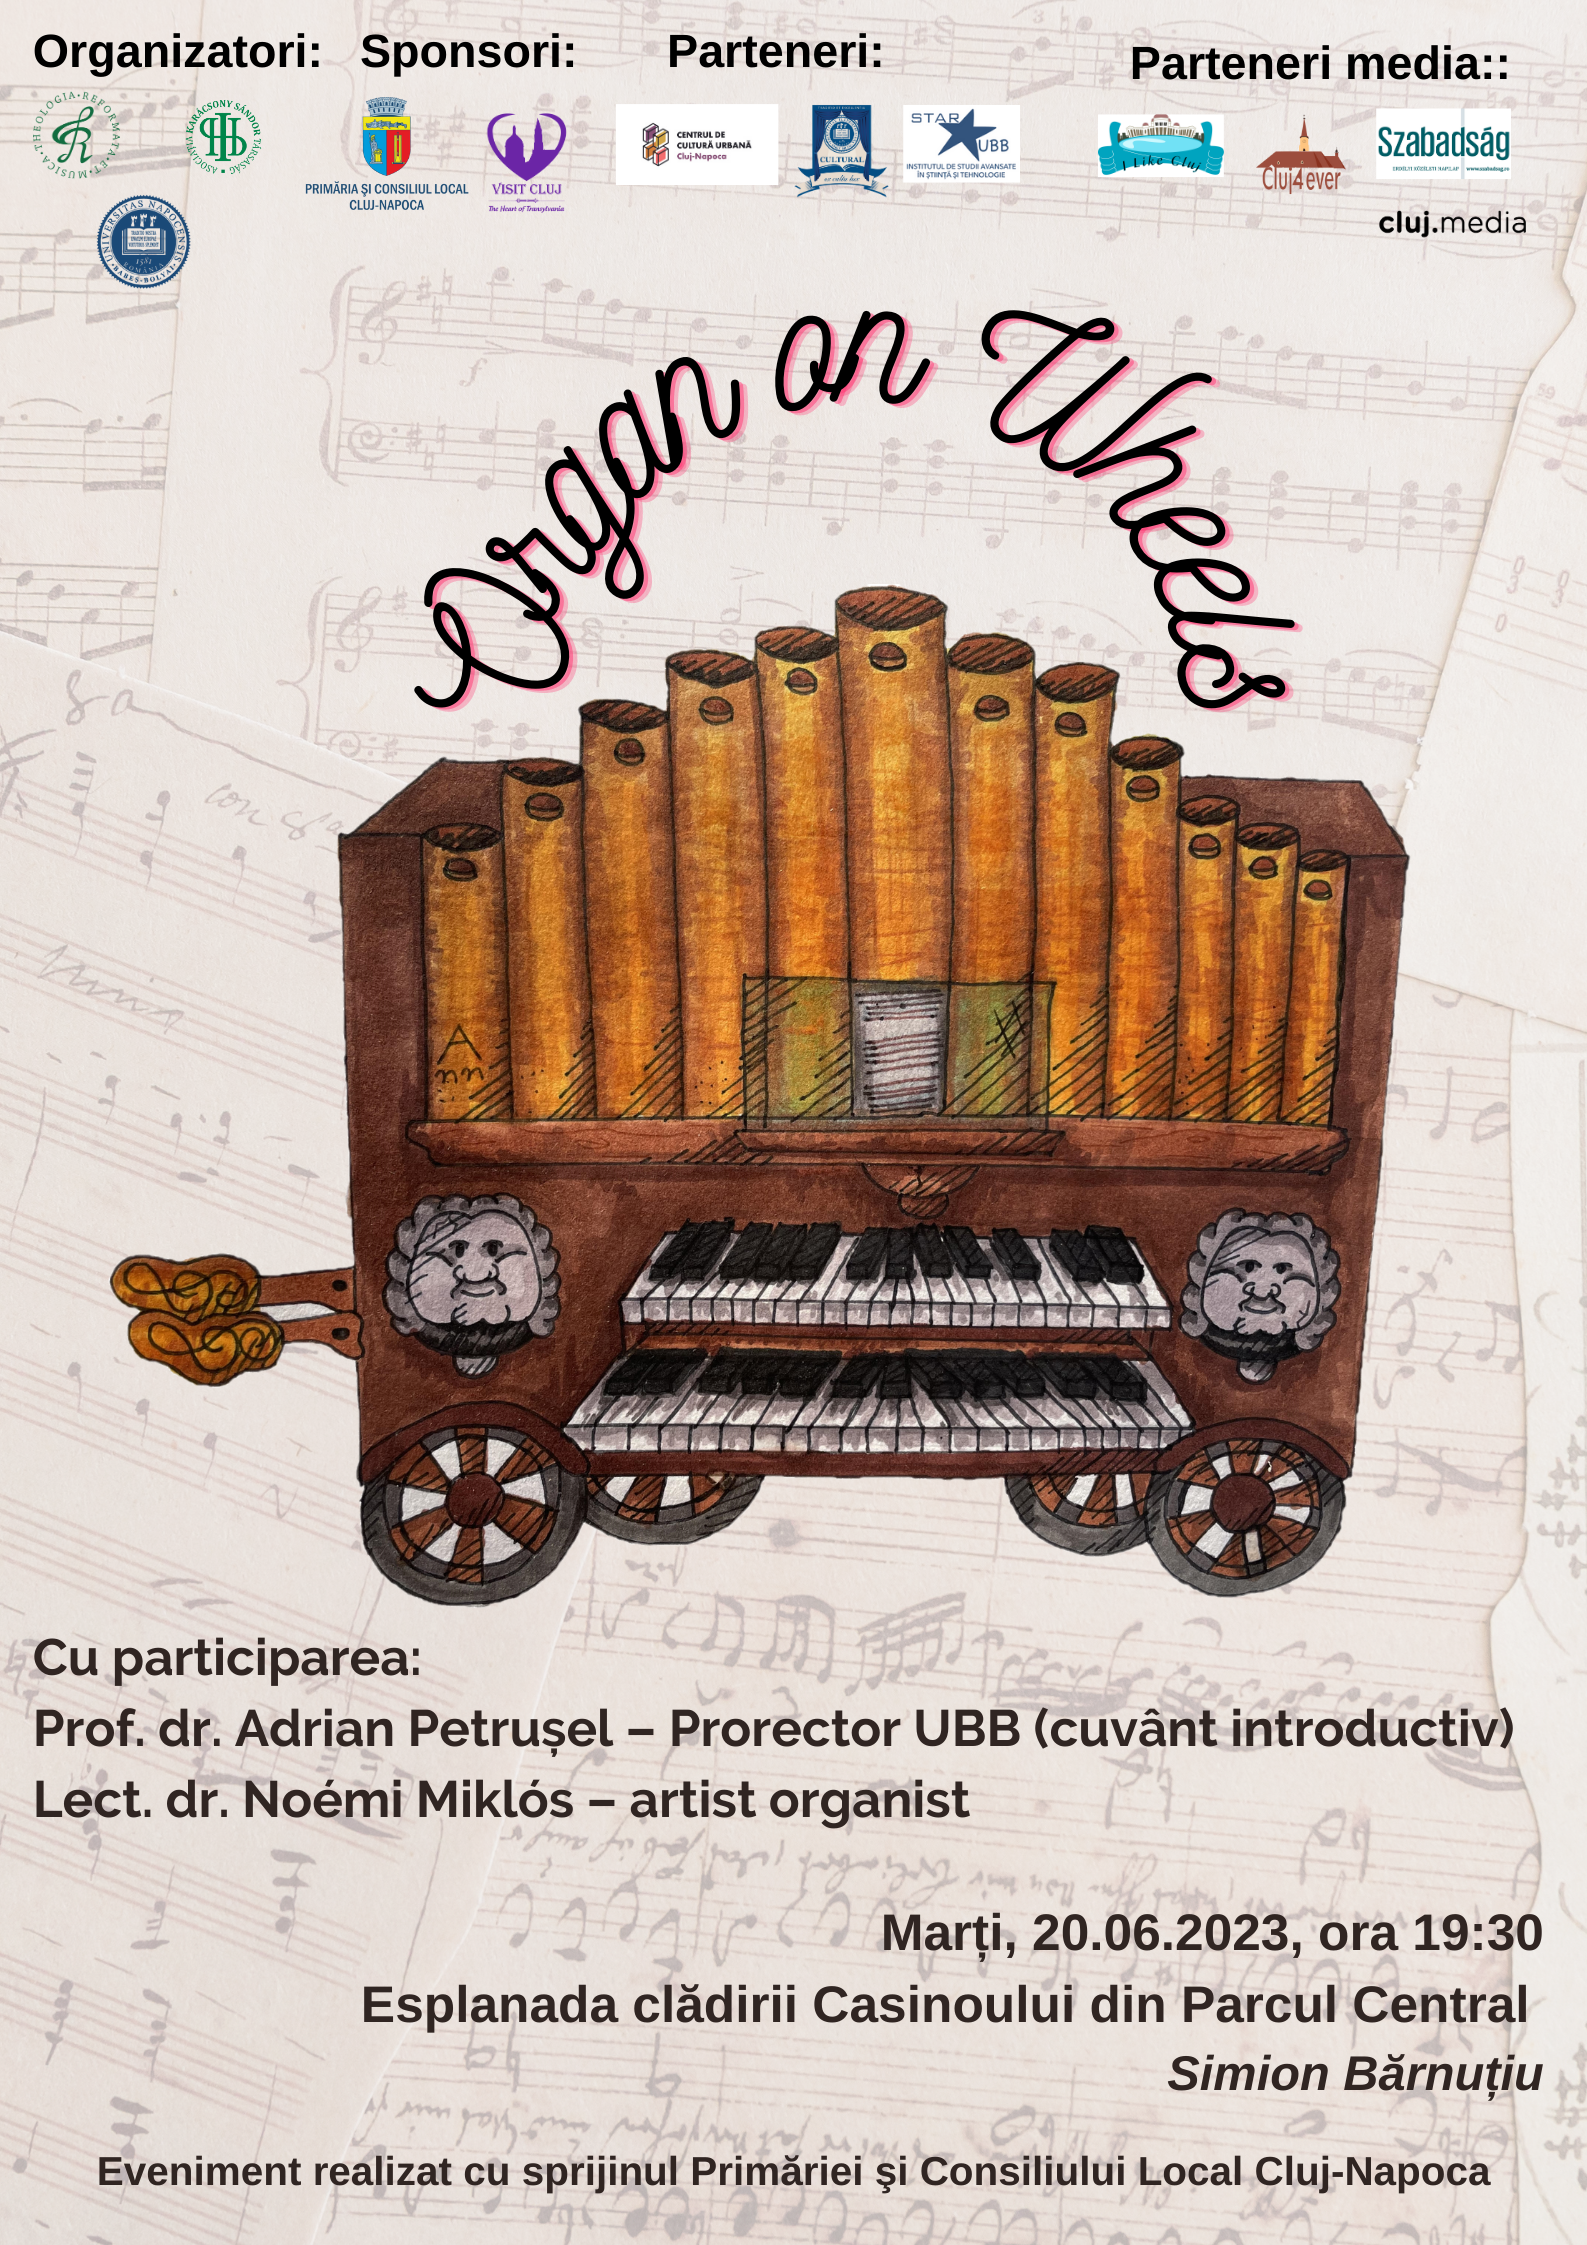 Organ on Wheels